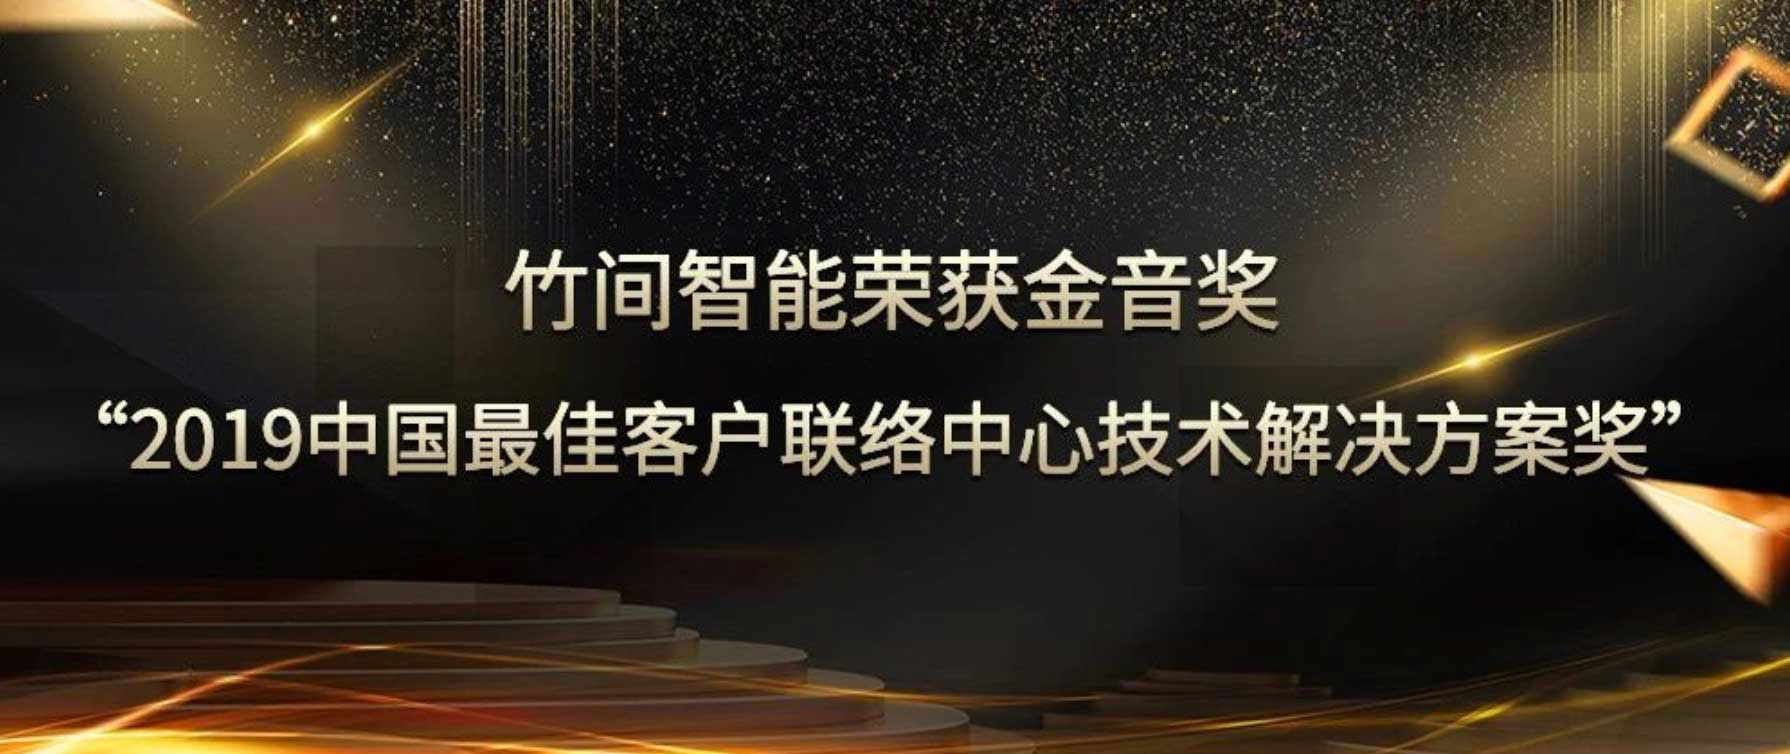 竹间智能荣获金音奖——“2019中国最佳客户联络中心技术解决方案奖”